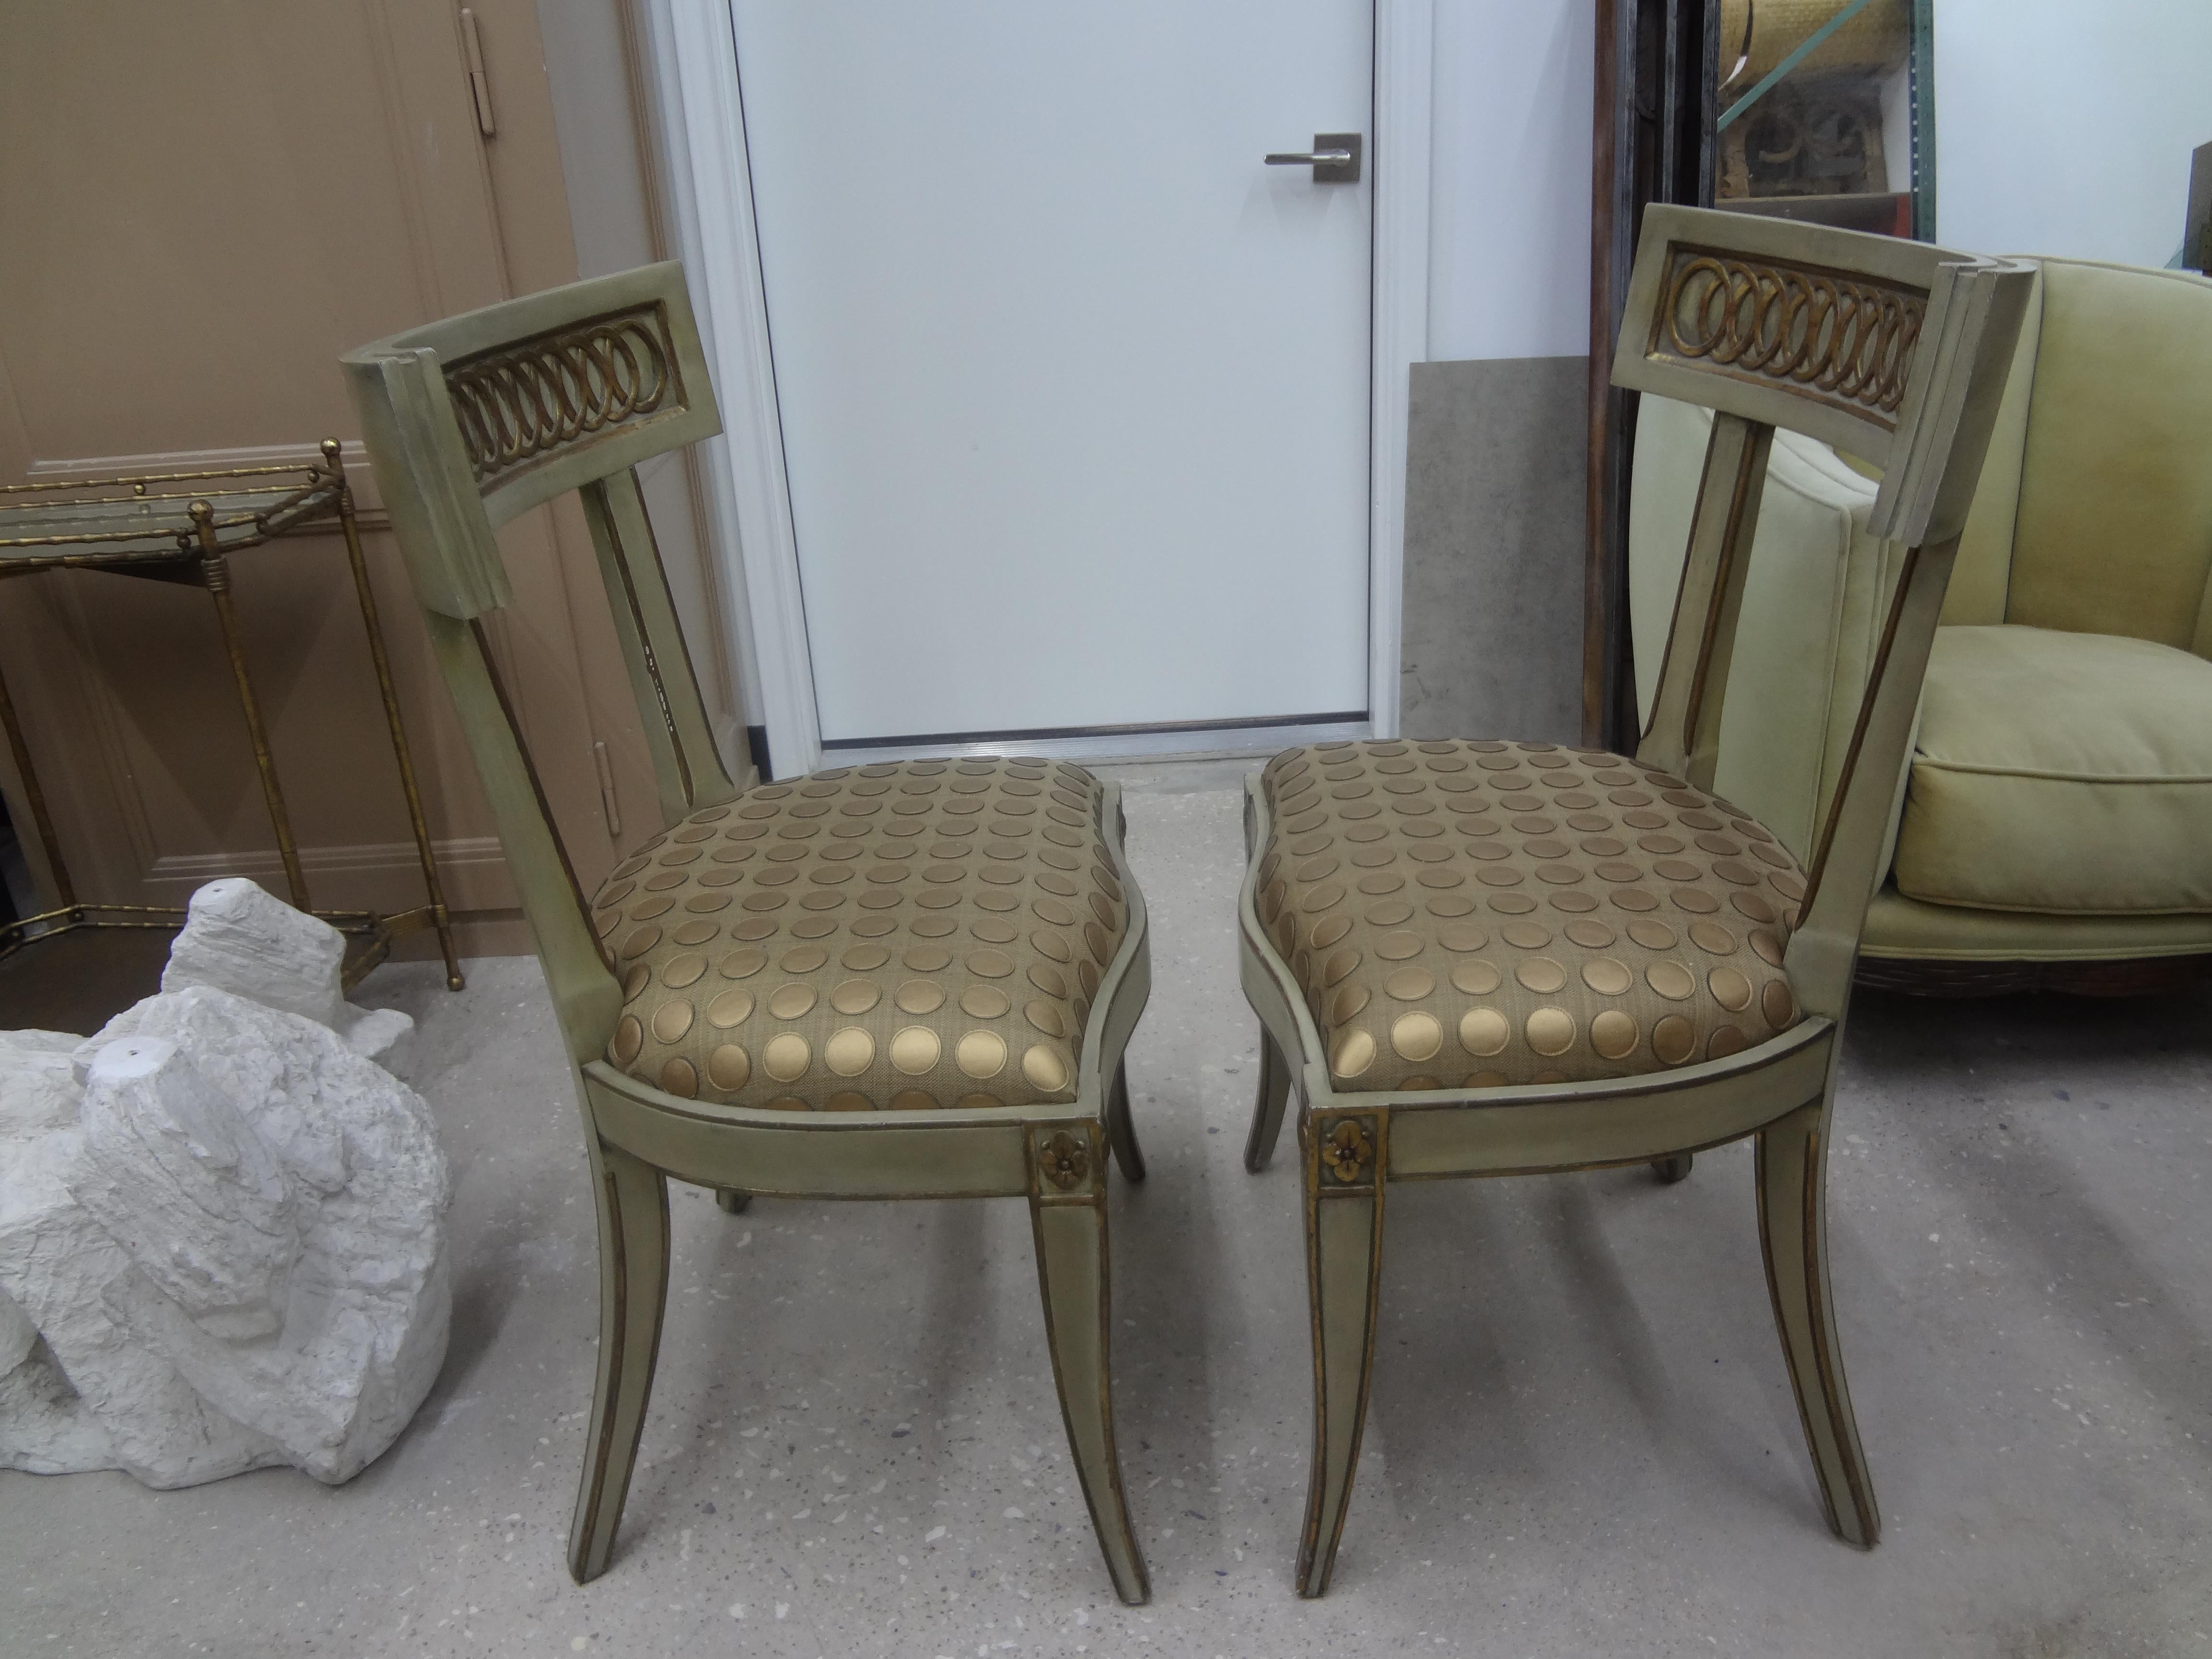 Atemberaubendes Paar italienischer Hollywood-Regency-Stühle im Klismos-Stil. Diese schicken italienischen Beistellstühle im gehobenen Stil sind in einem sanften Grau/Grün mit vergoldeten Akzenten lackiert und haben tolle gespreizte Beine oder